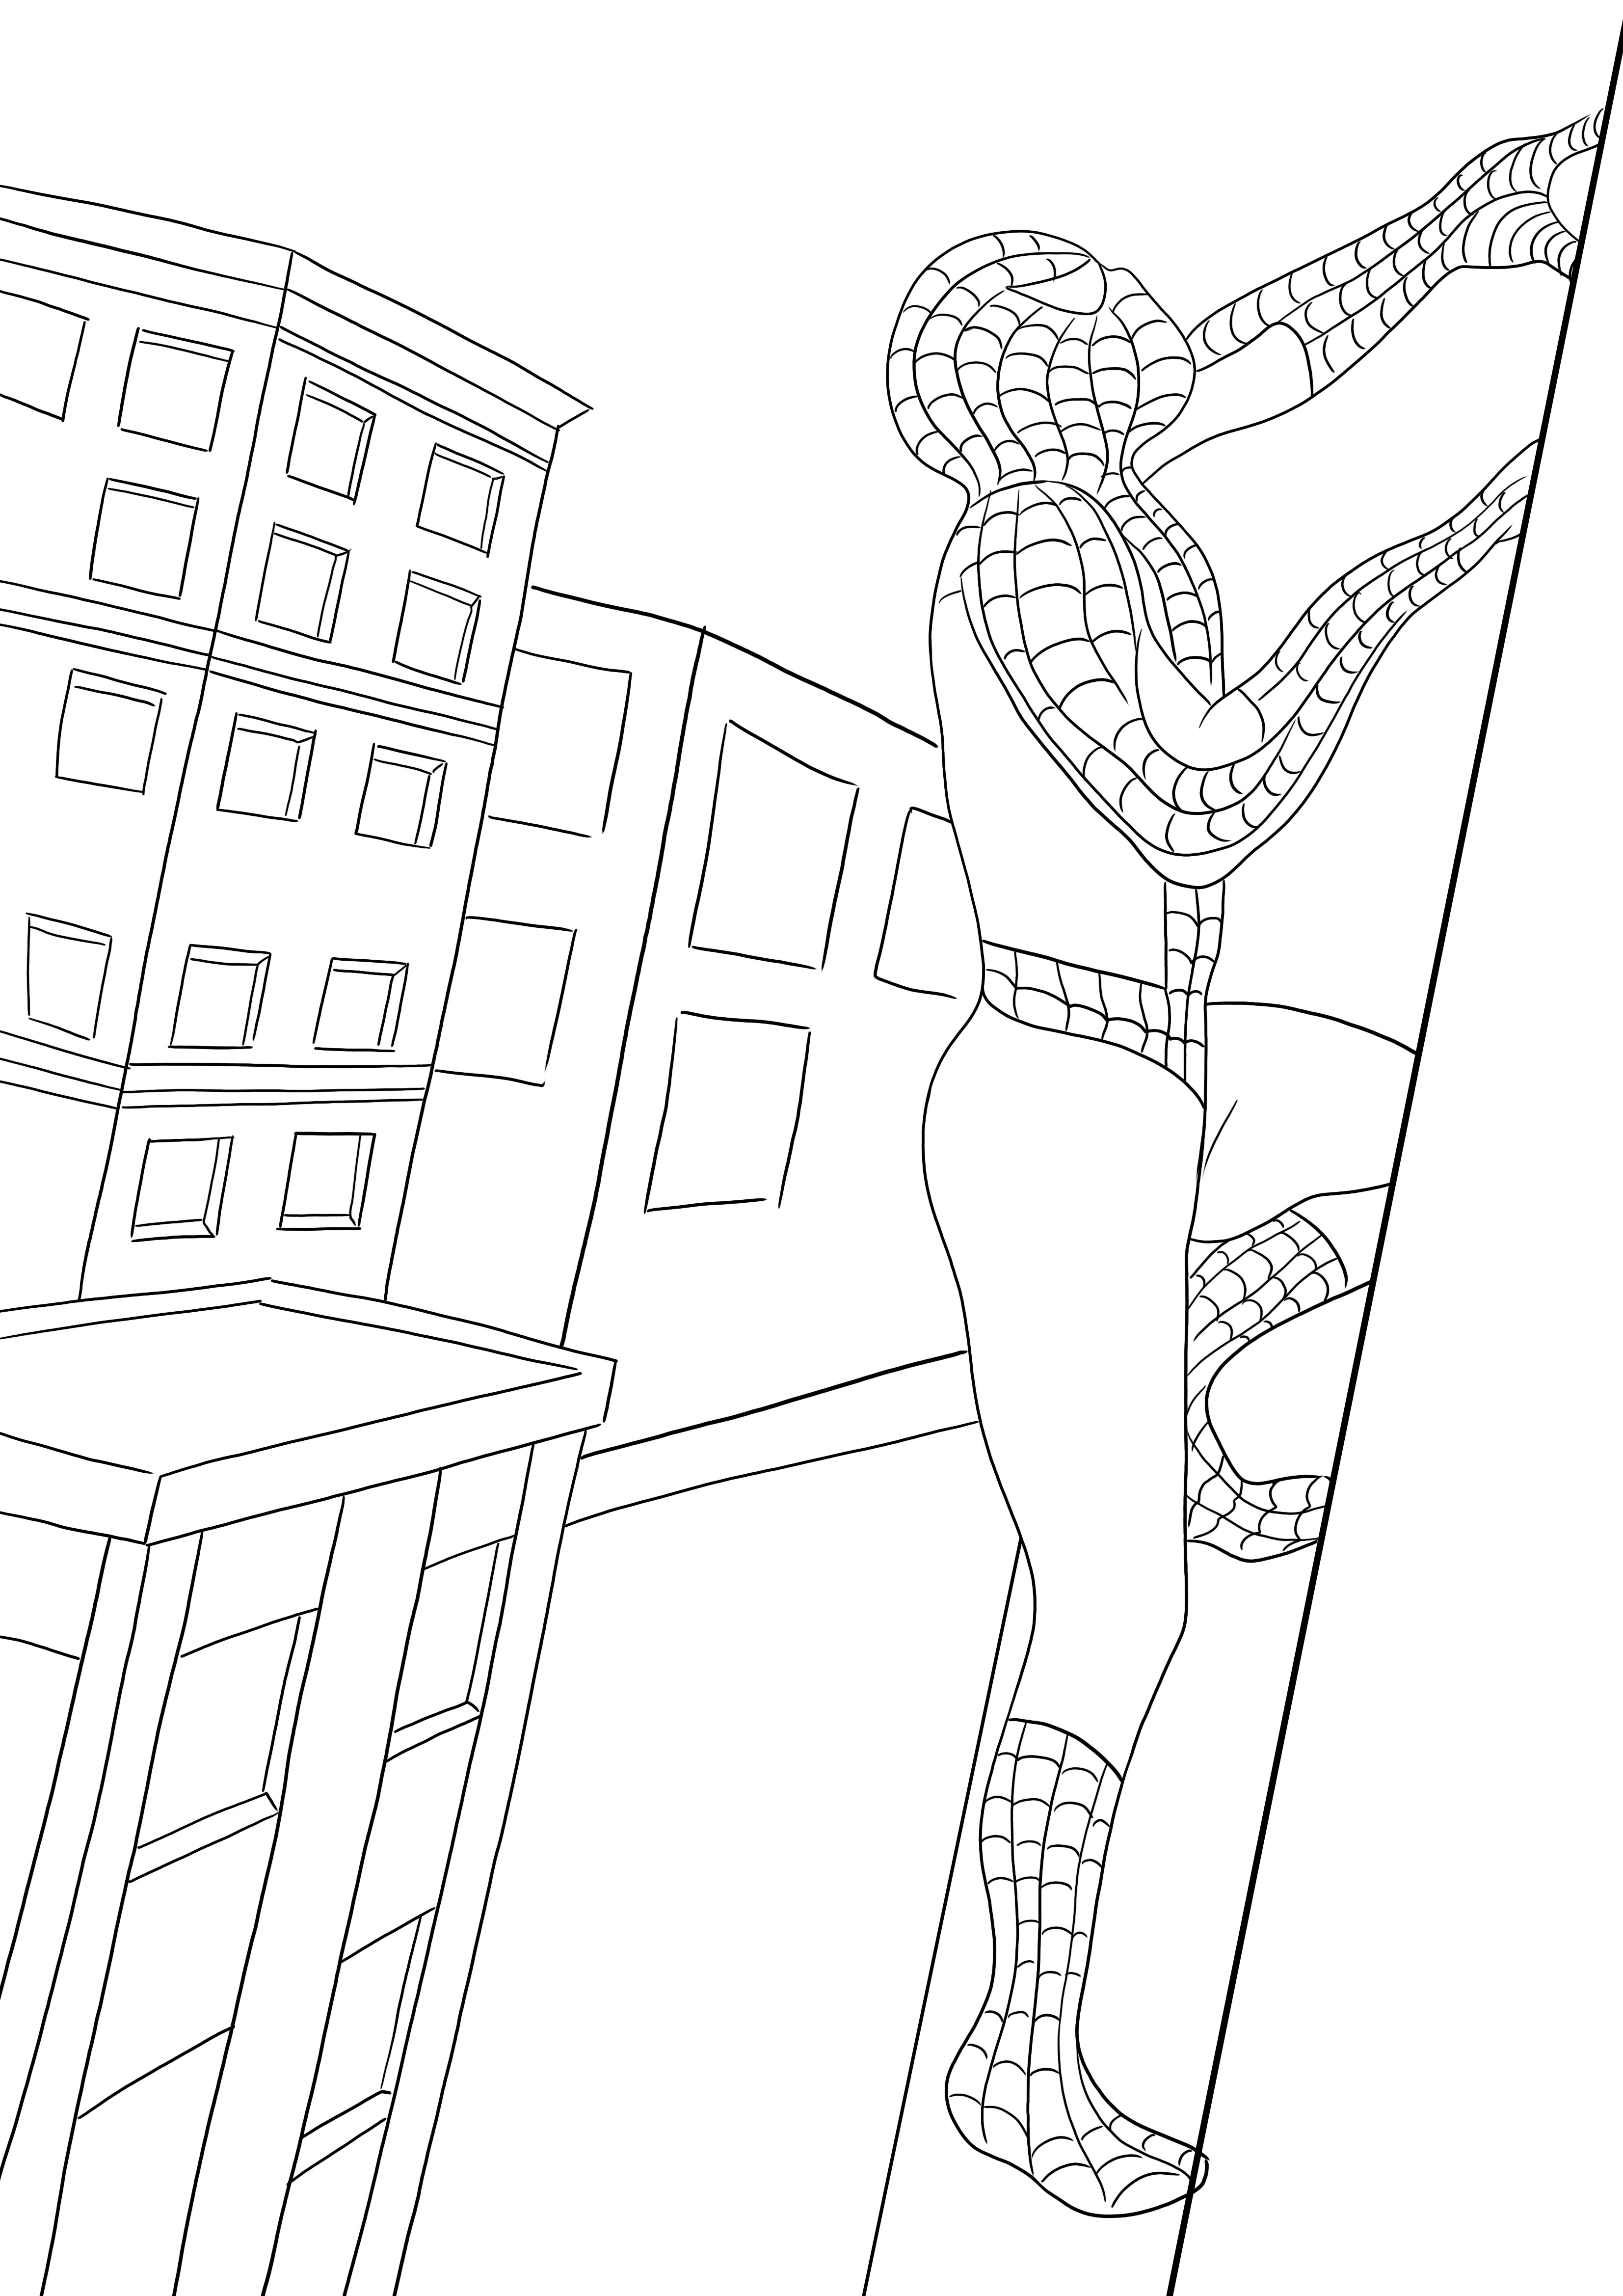 Eine kostenlose Druckversion von Spiderman, der auf das Gebäude klettert – Kinder können ihn leicht ausmalen